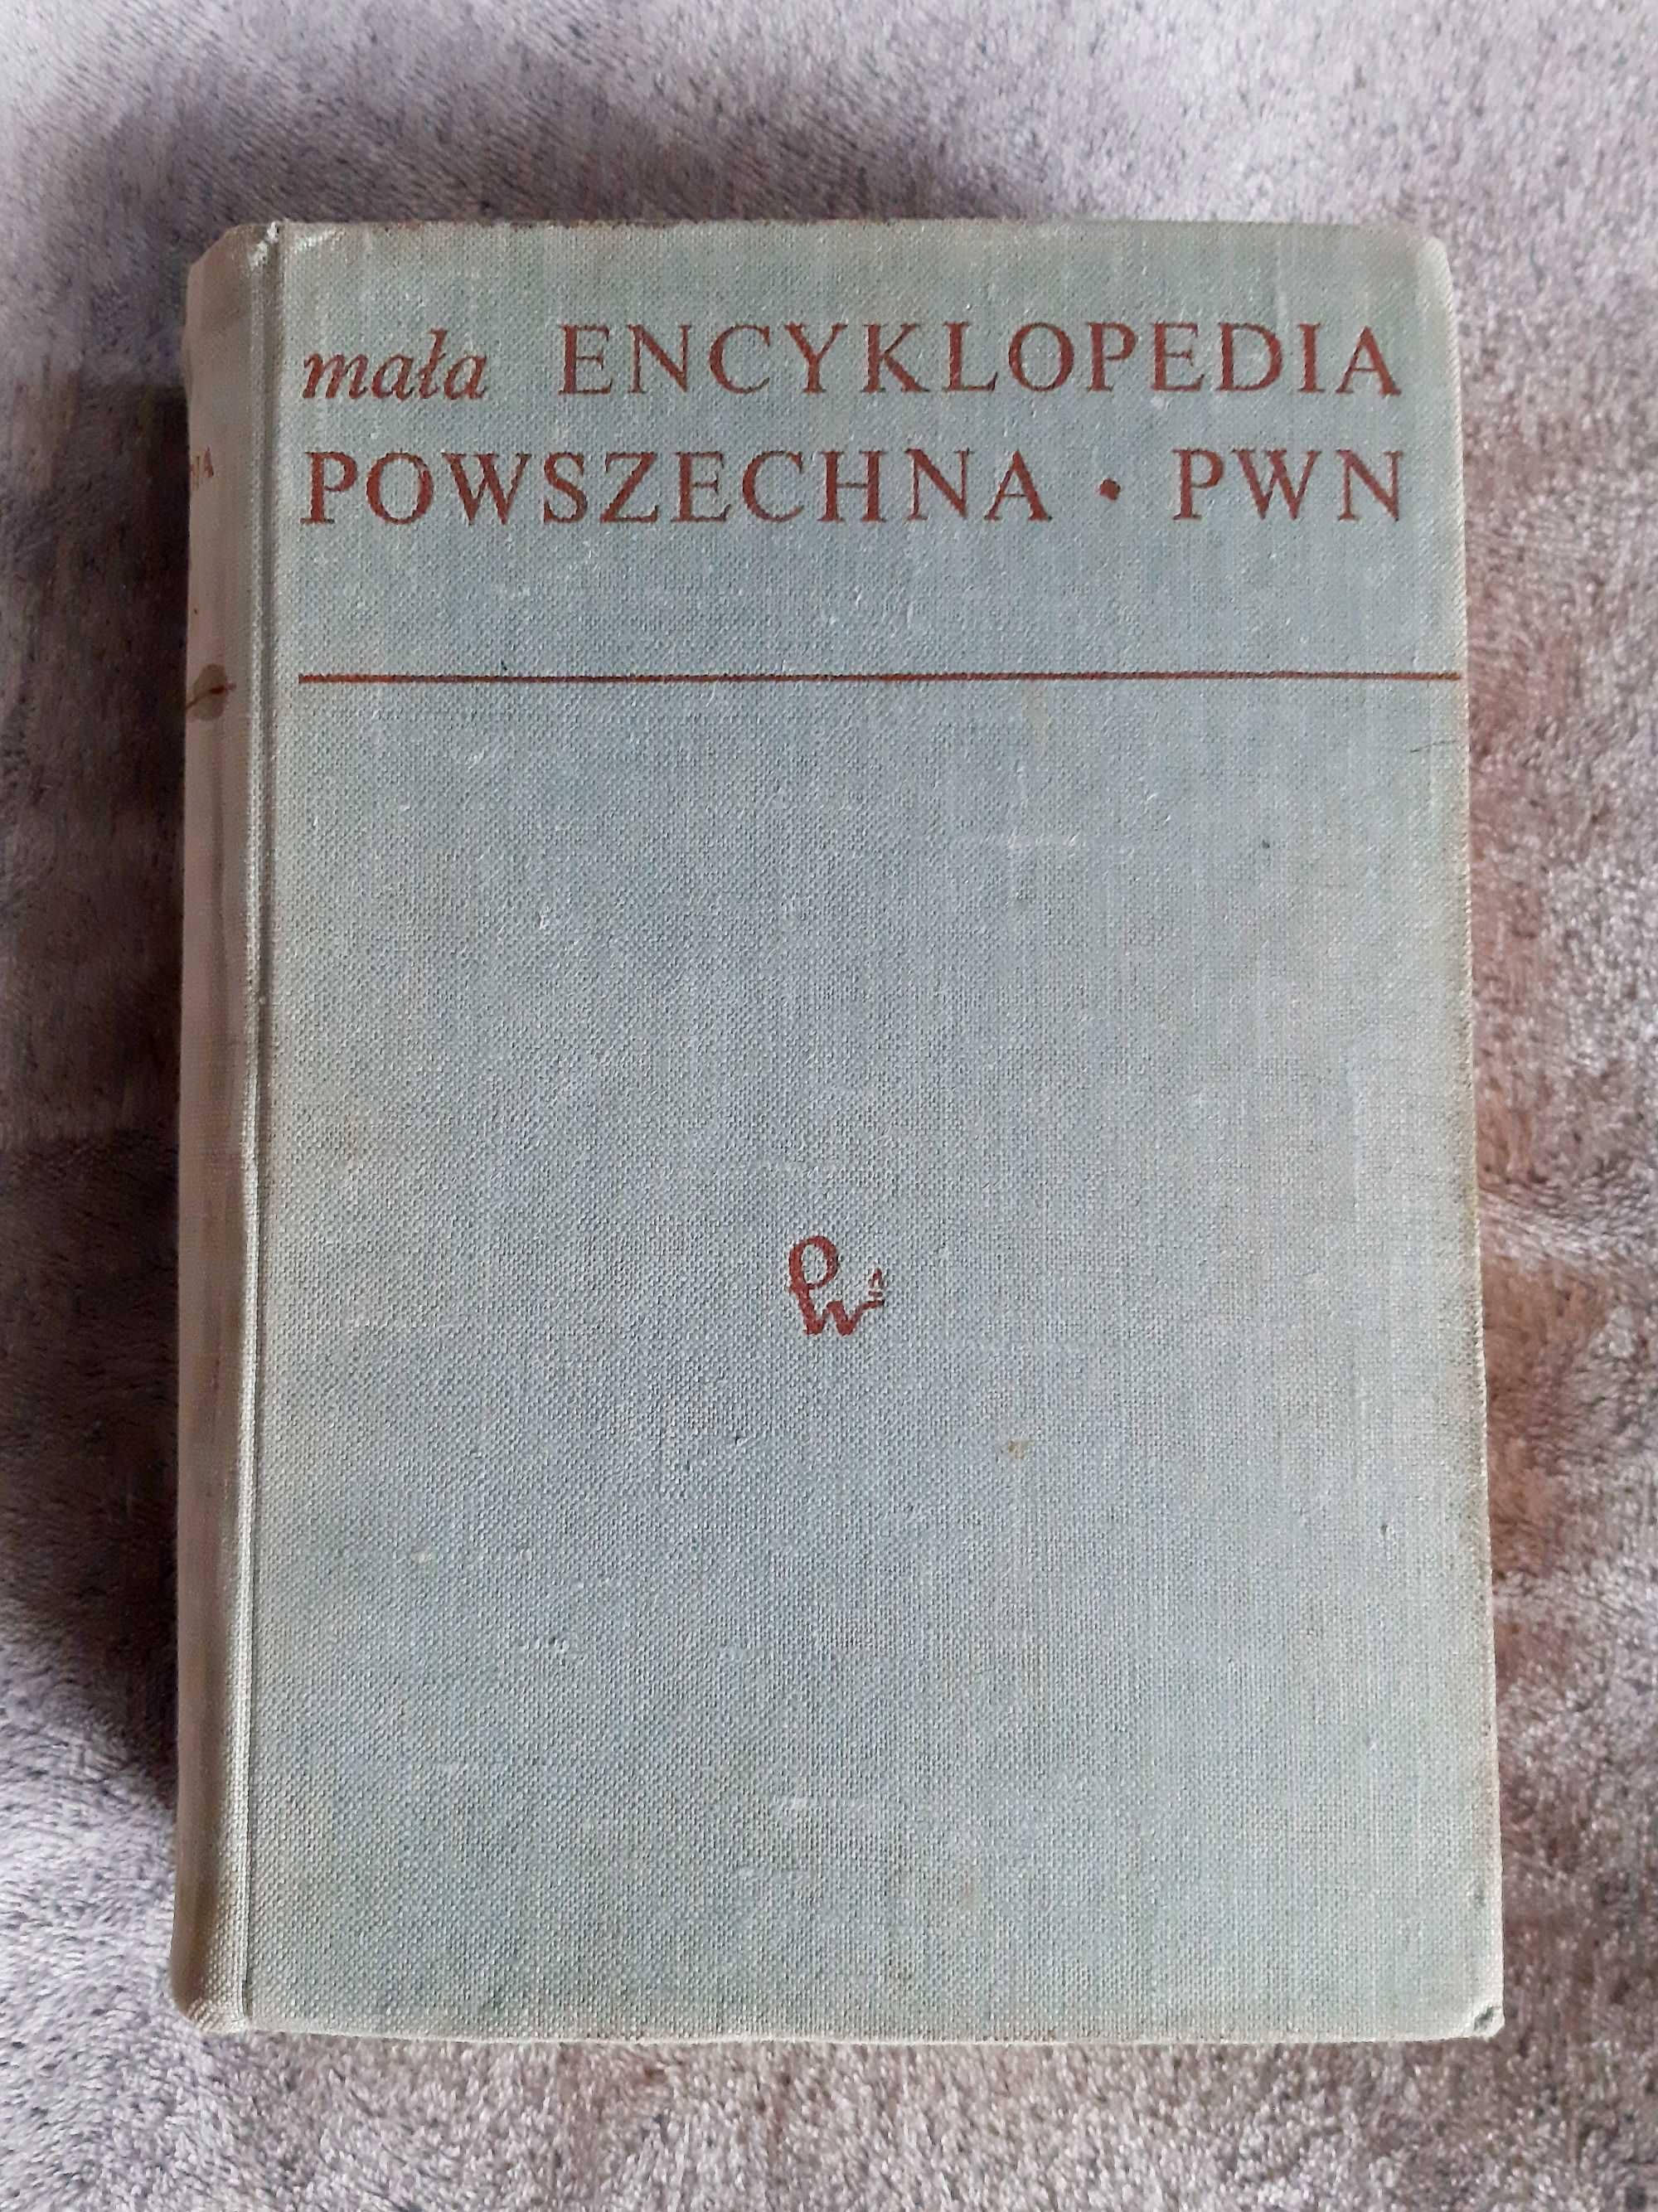 Mała Encyklopedia Powszechna PWN